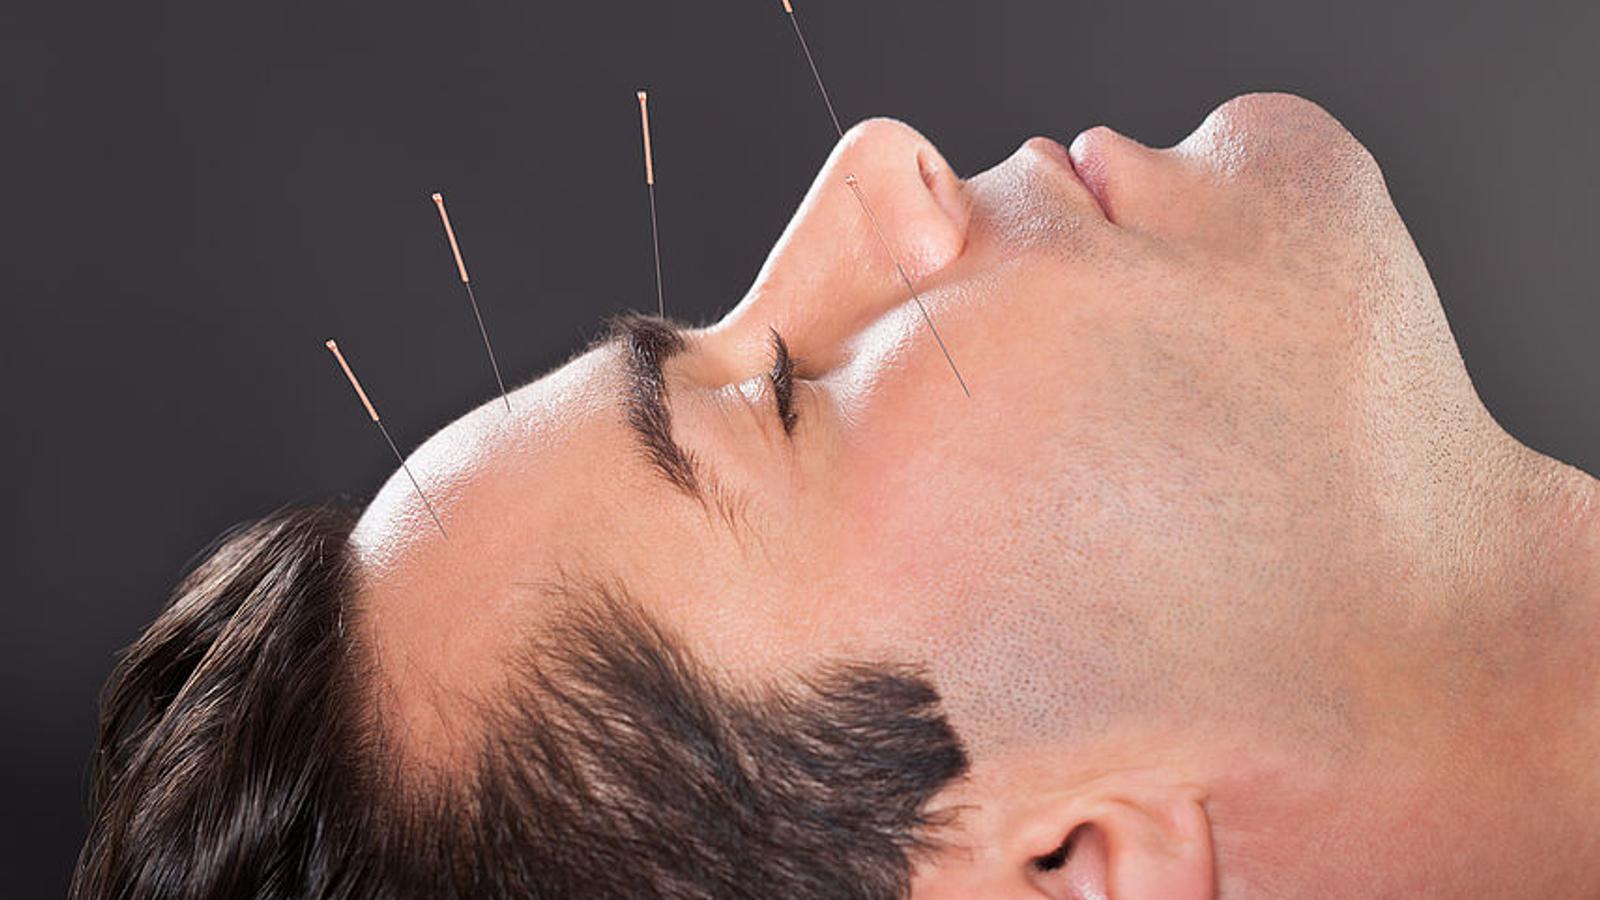 Mann mit Kopfschmerzen hat Akupunktur-Nadeln im Gesicht